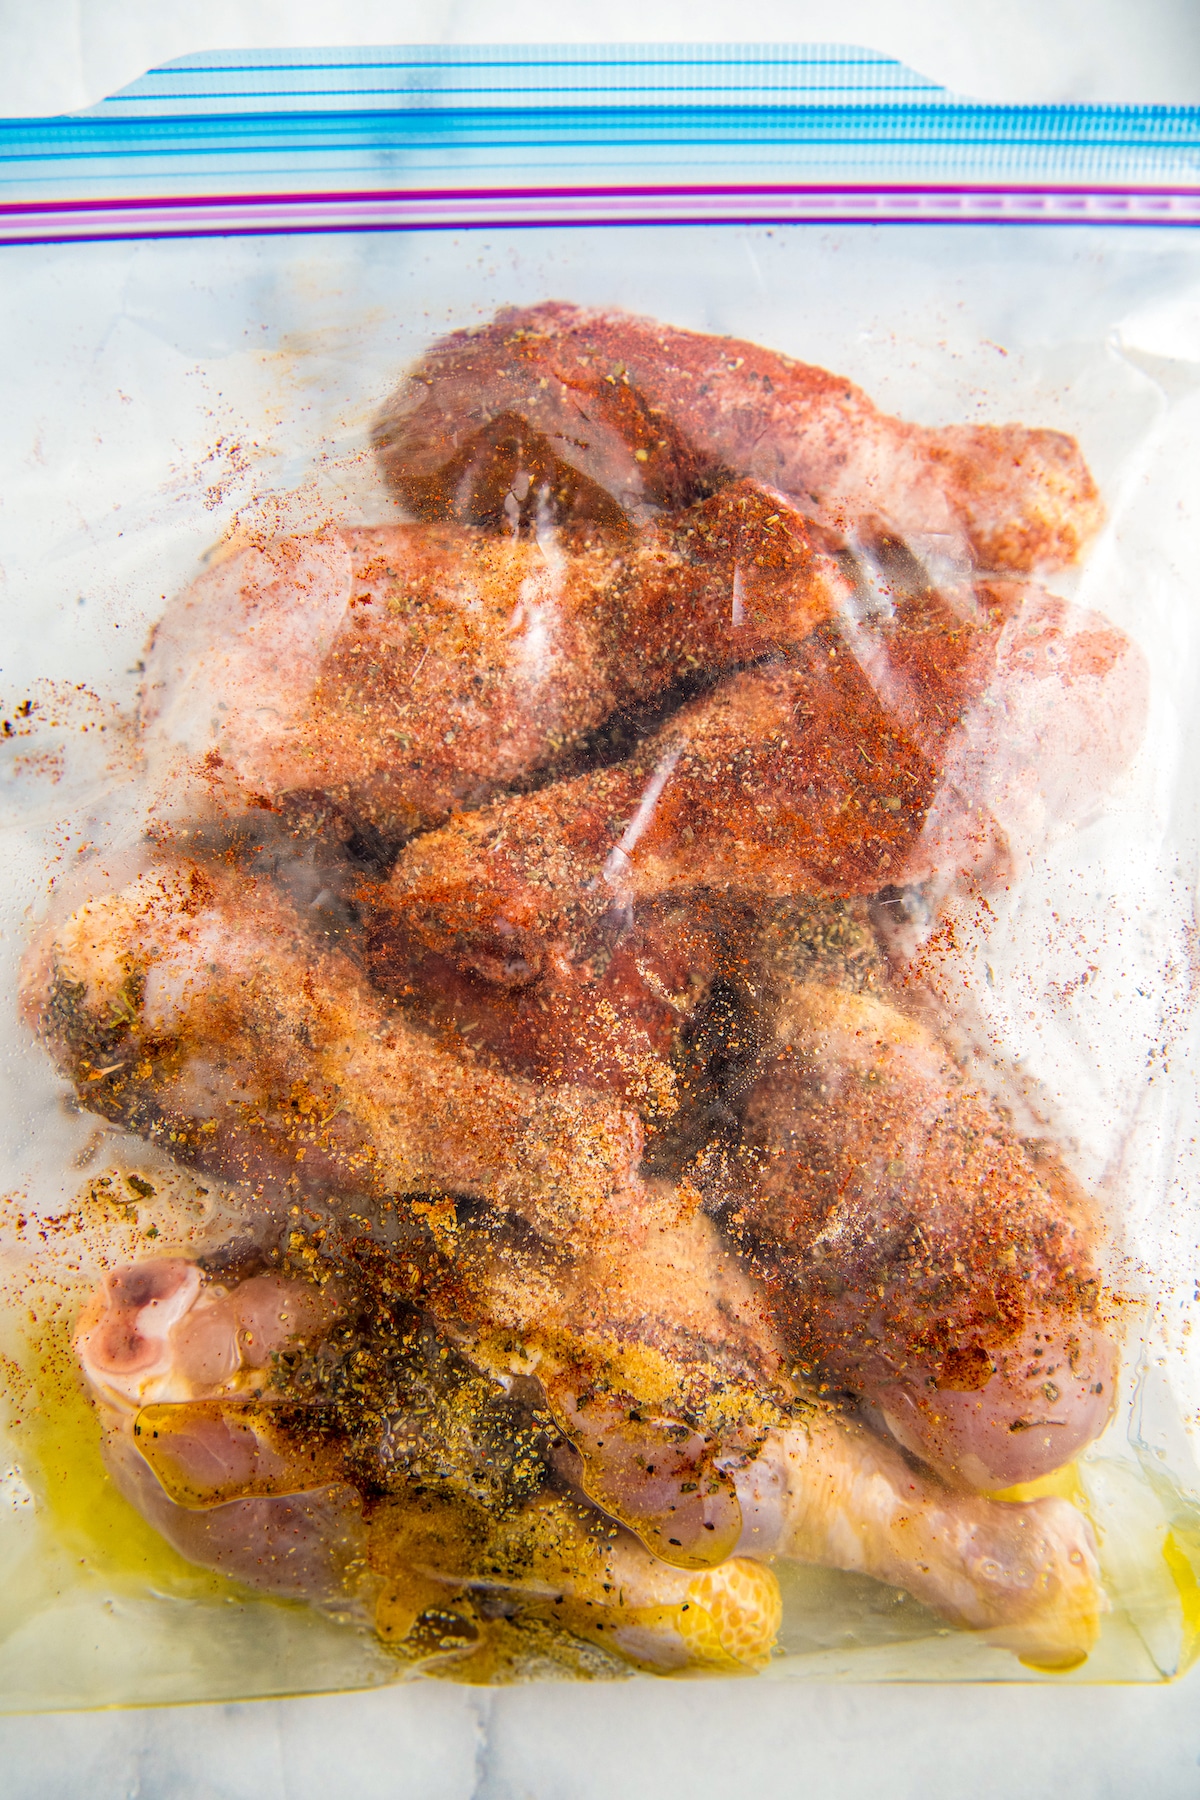 Chicken legs in a ziplock bag with seasonings.